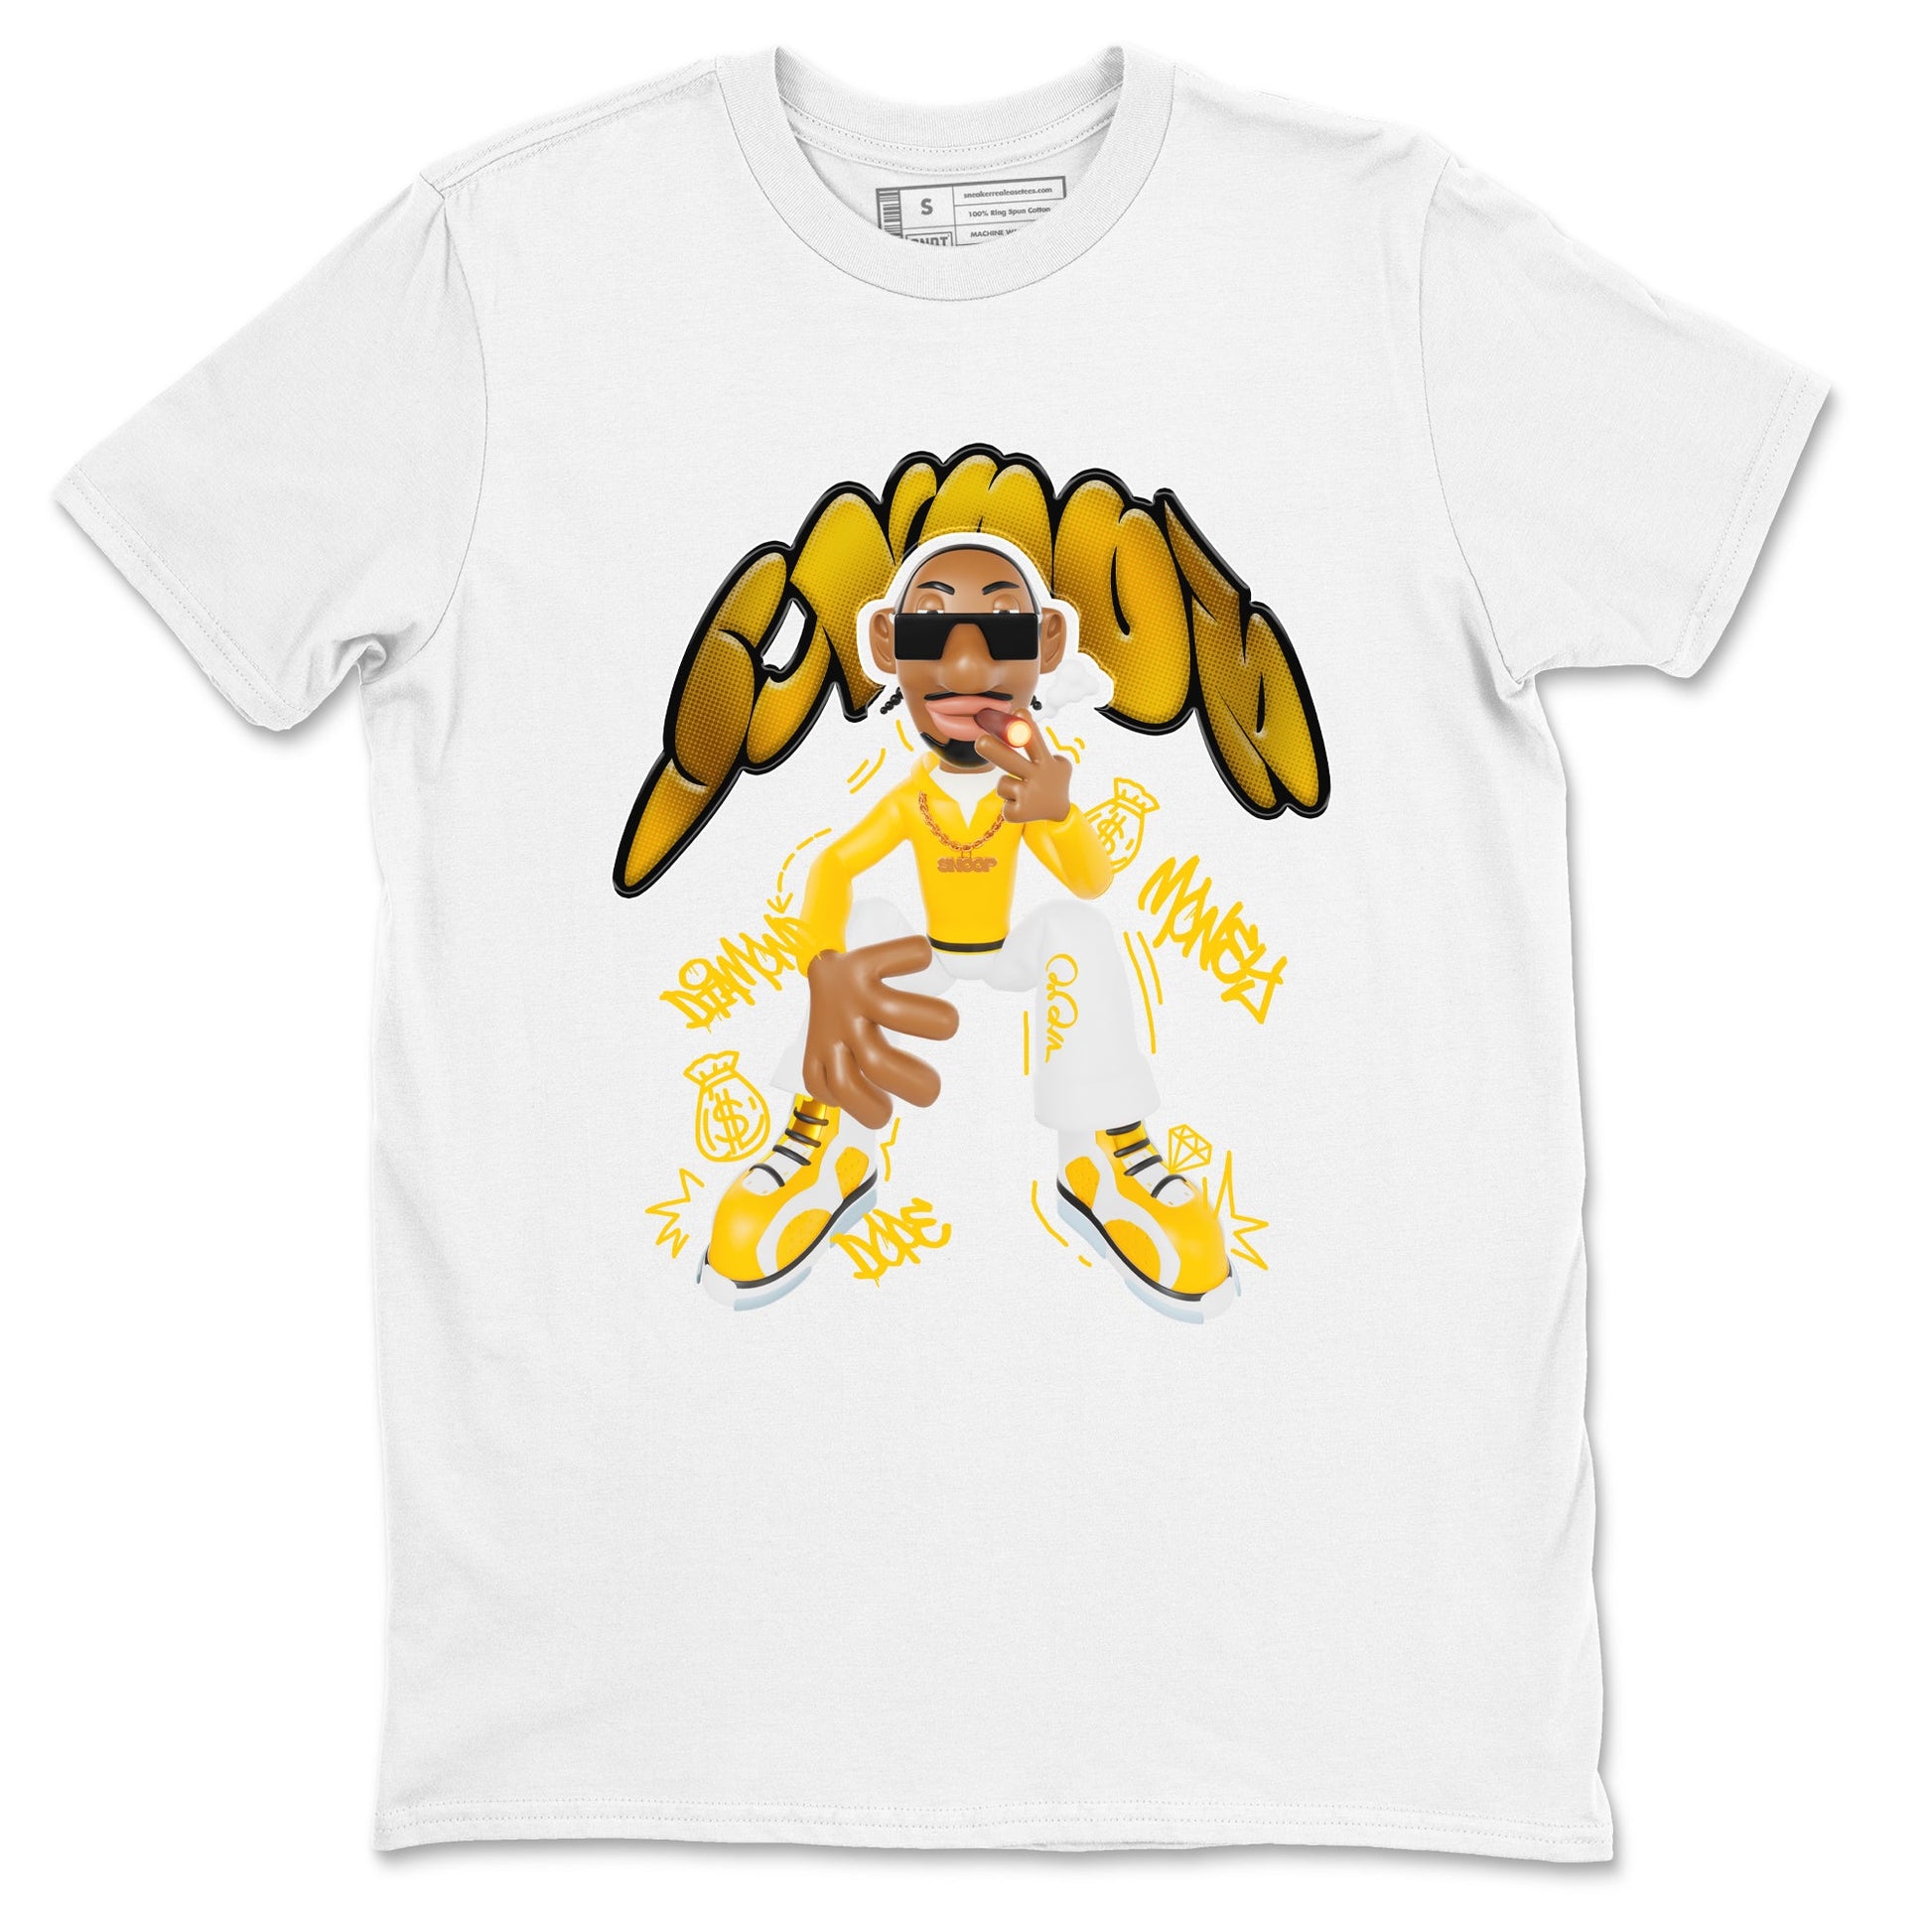 6s Yellow Ochre shirt to match jordans Snoop sneaker tees Air Jordan 6 Yellow Ochre SNRT Sneaker Release Tees Unisex White 2 T-Shirt